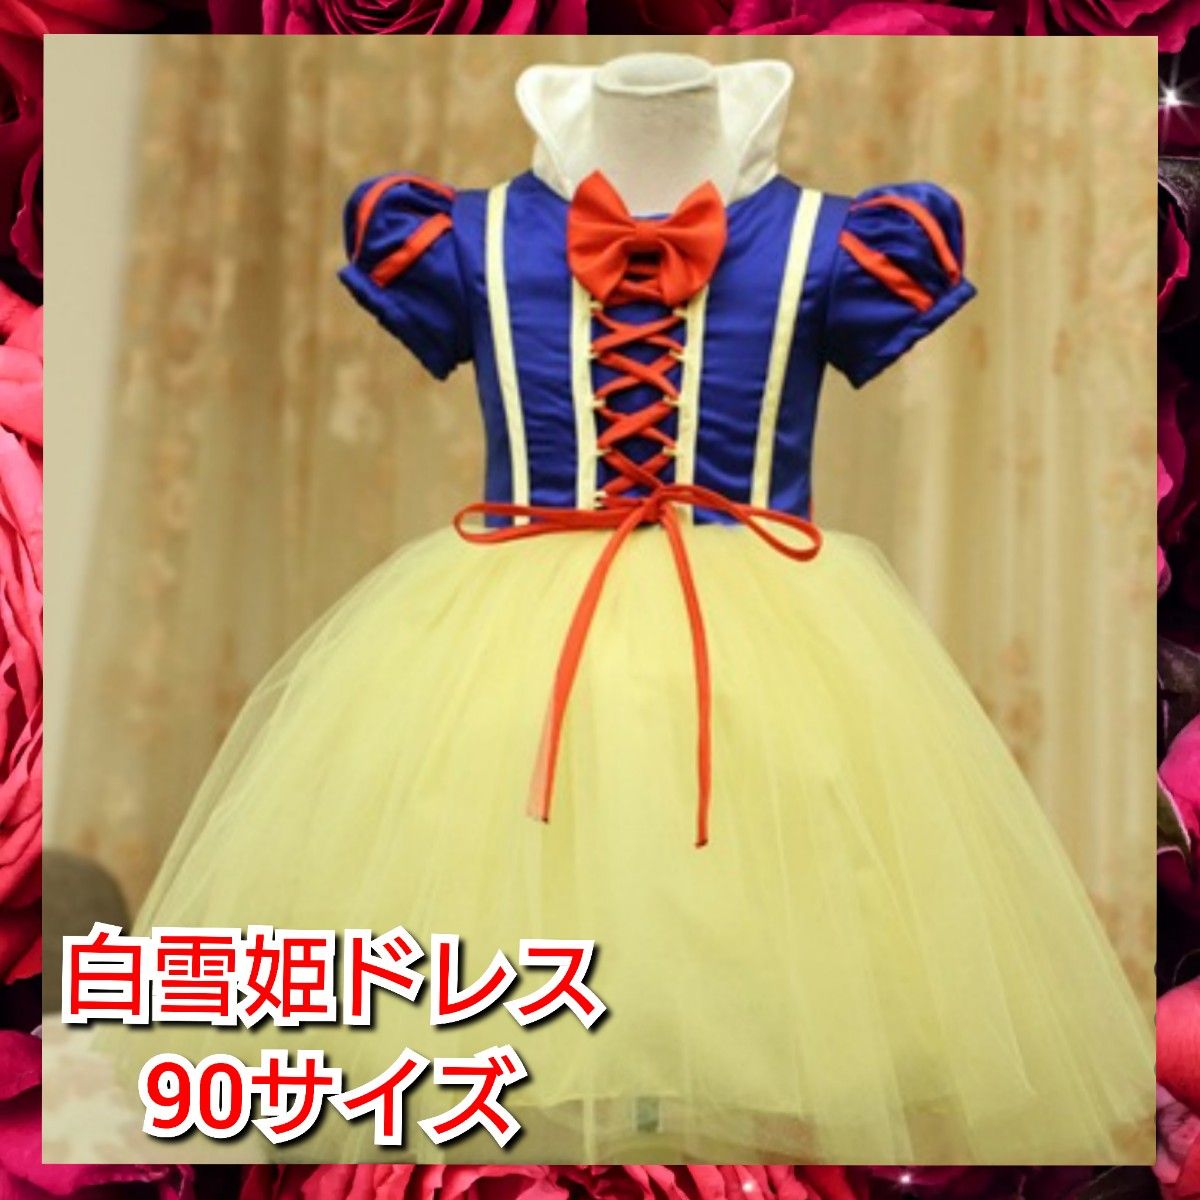 白雪姫 ドレス プリンセス リボン 90 ドレスセット なりきりセット お祝い